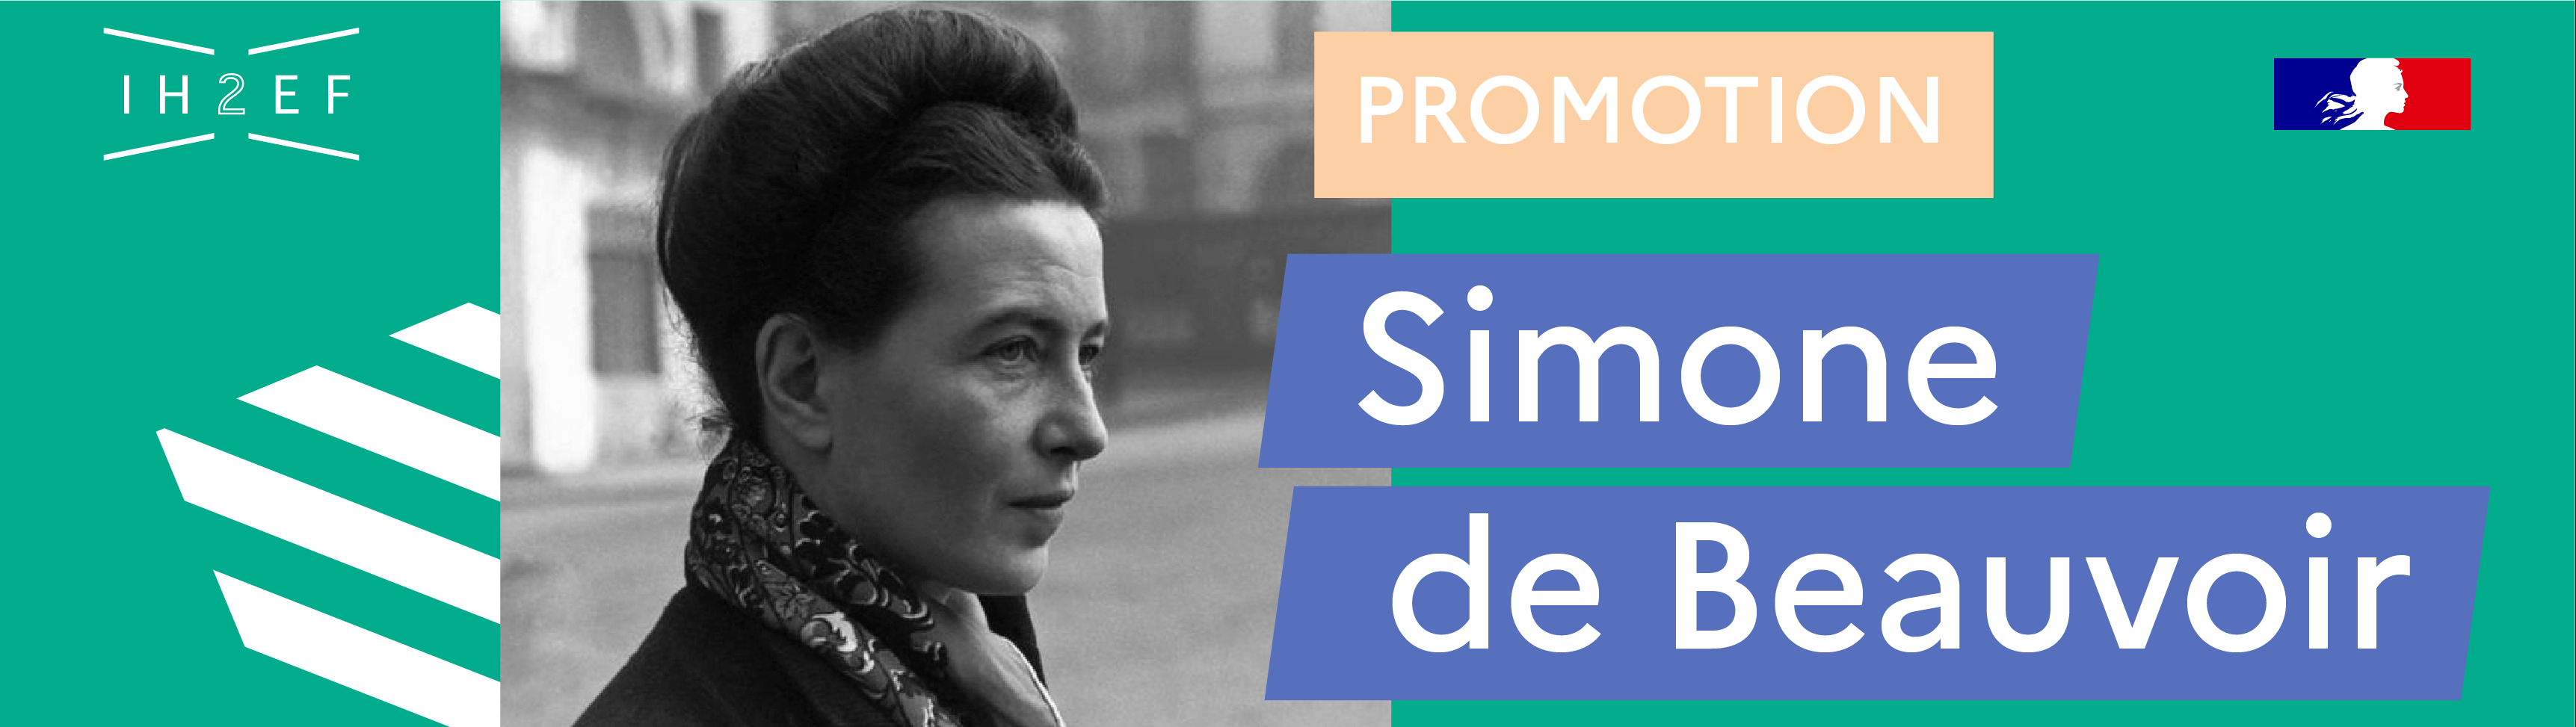 promotion Simone de Beauvoir IH2EF FI